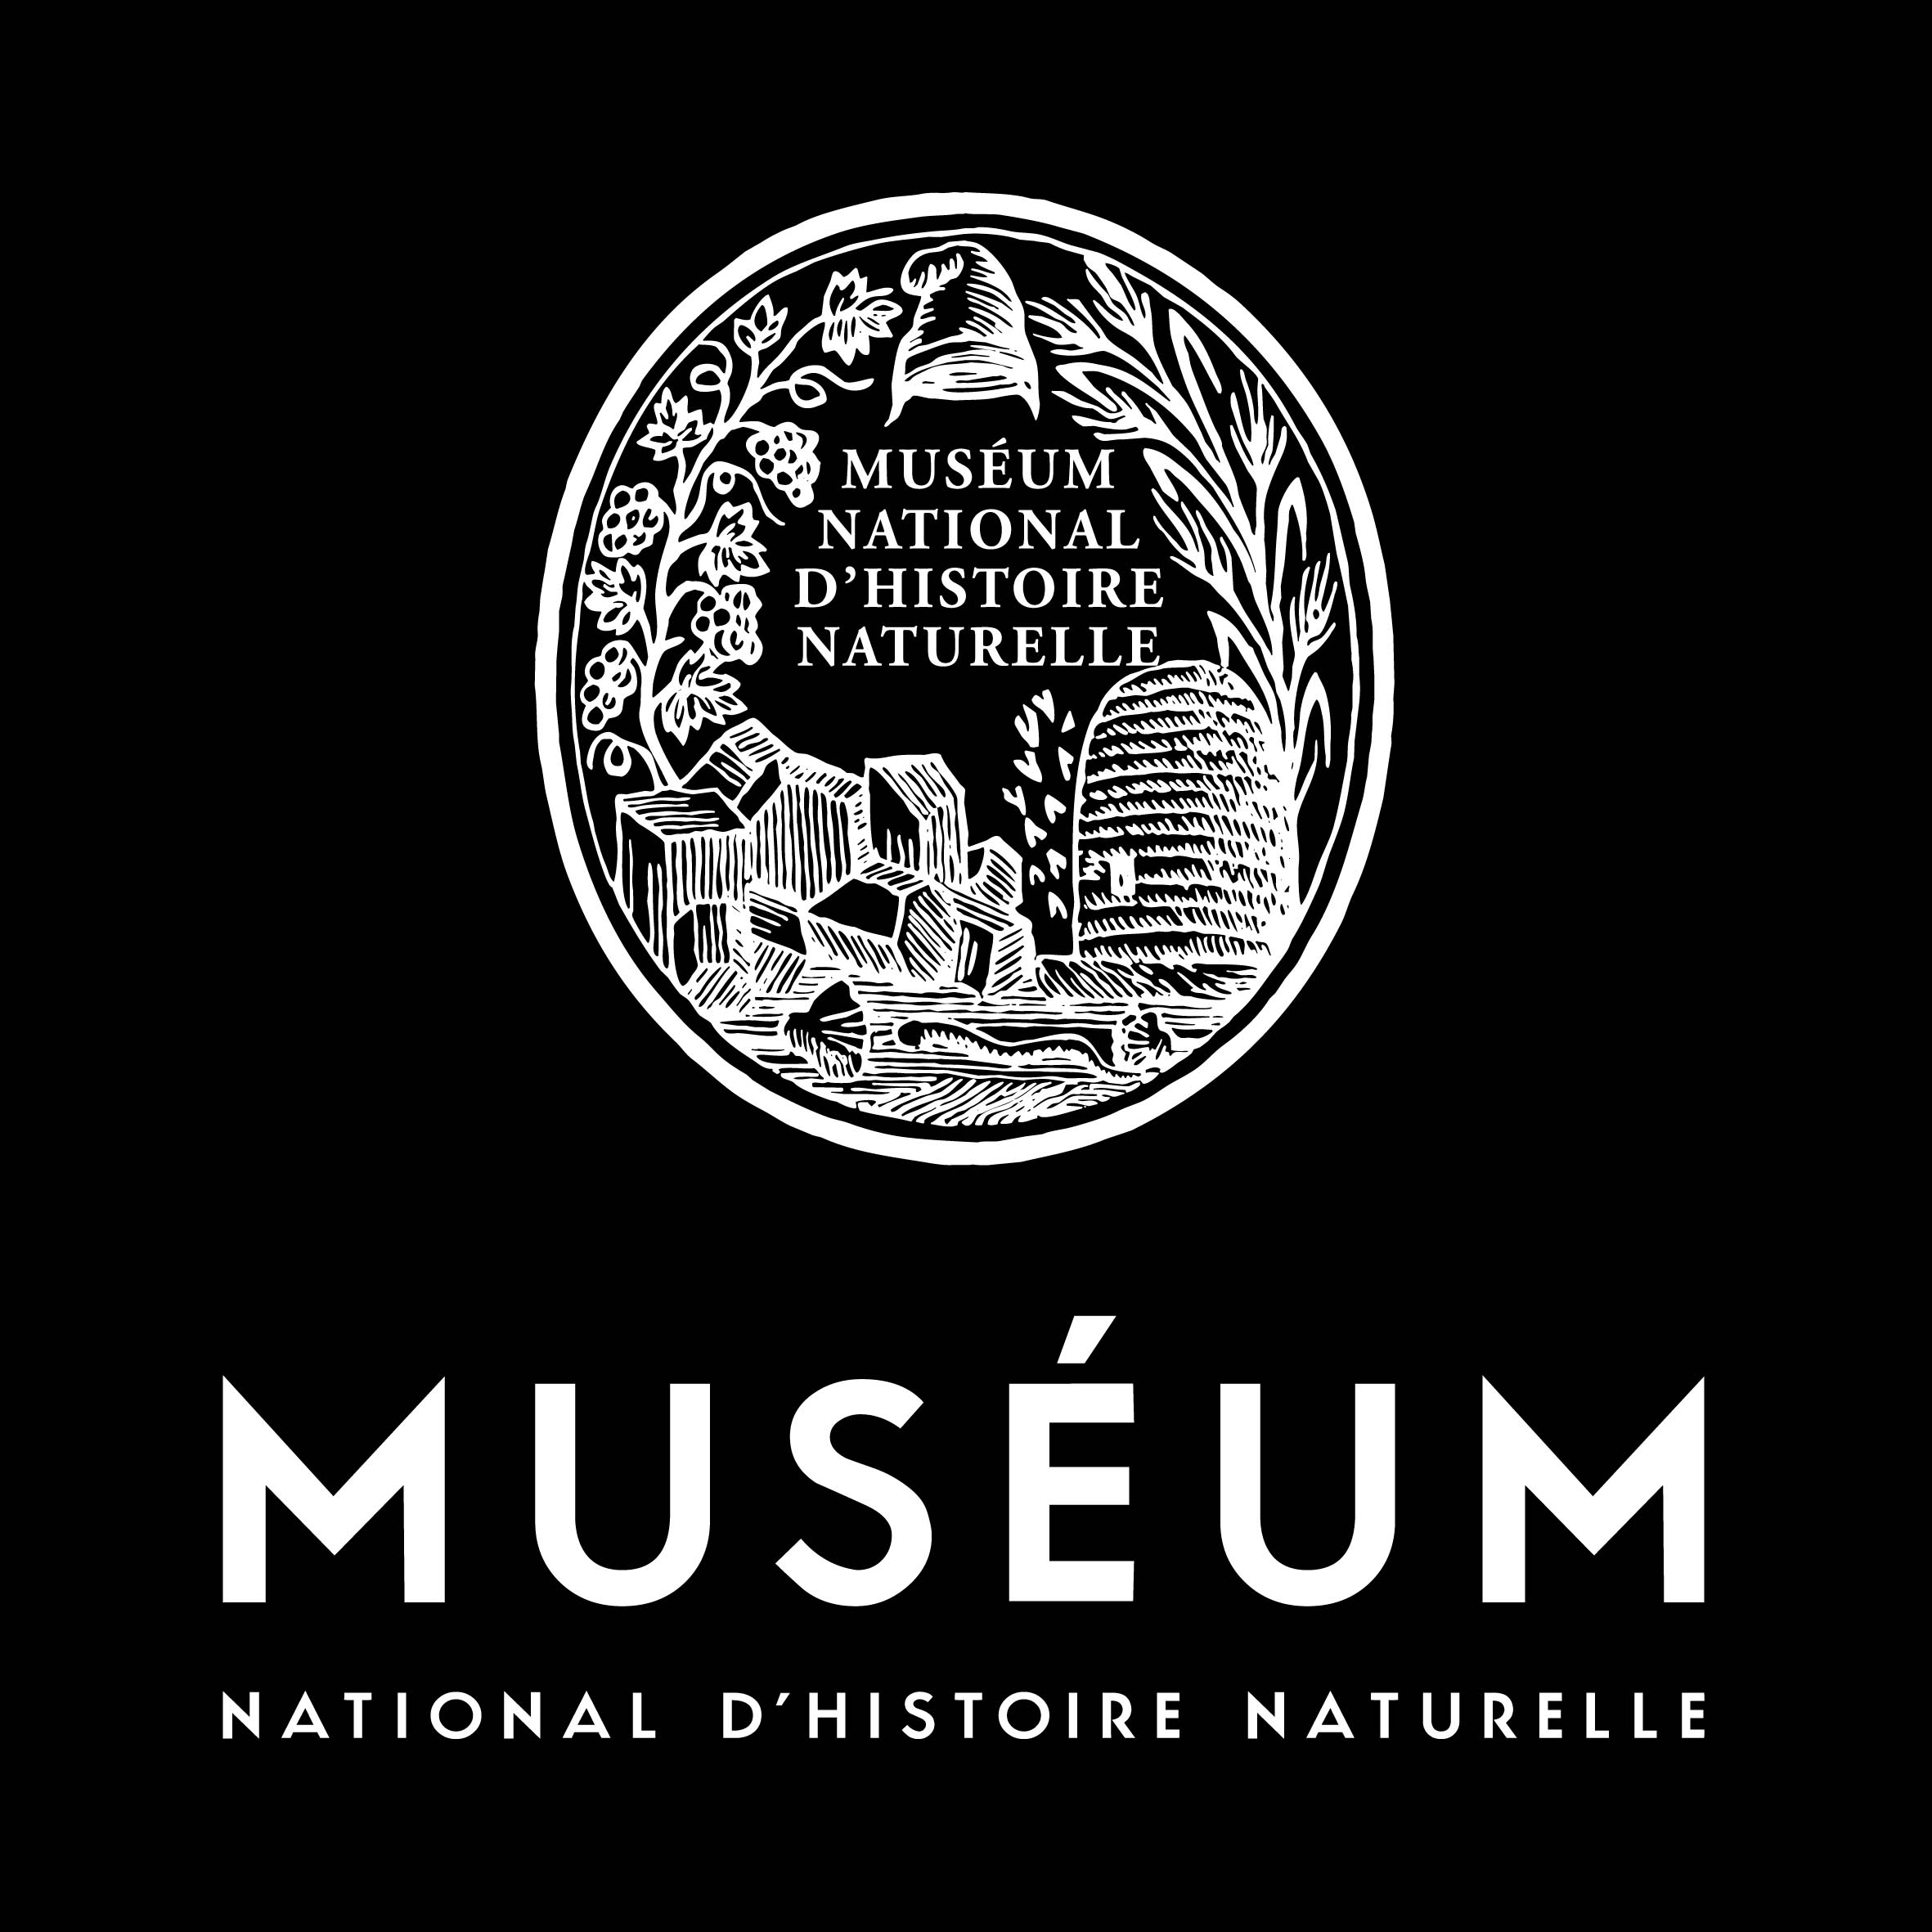 Muséum national d'histoire naturelle